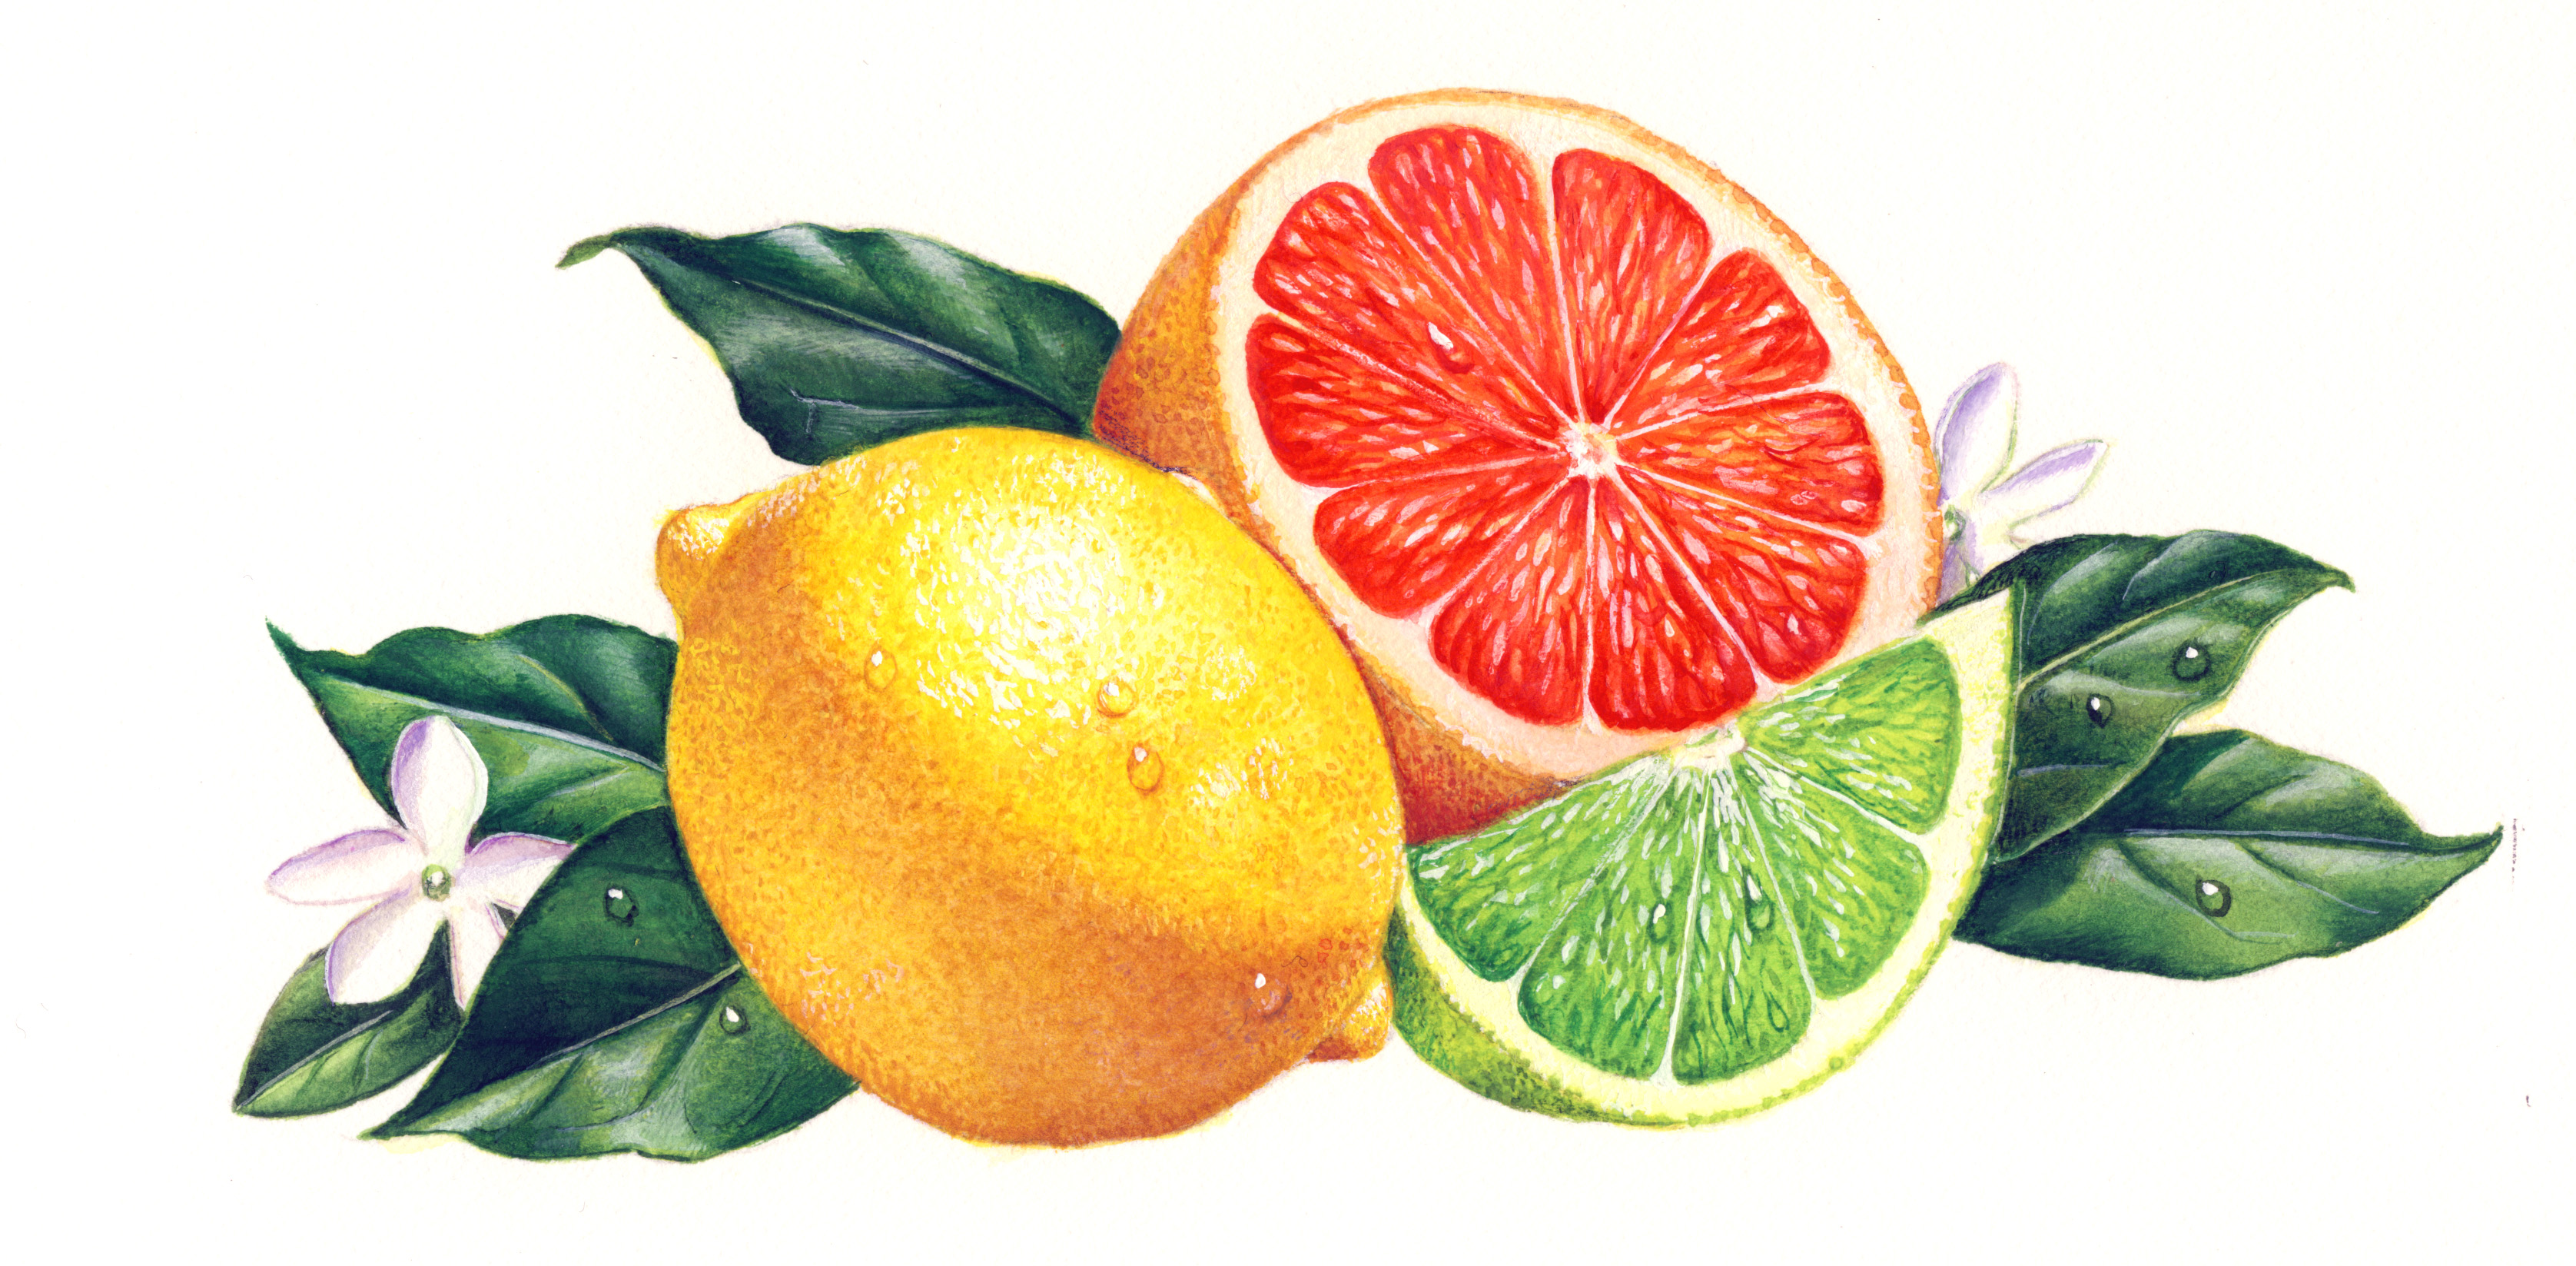 Lemon Orange - hotelroomsearch.net